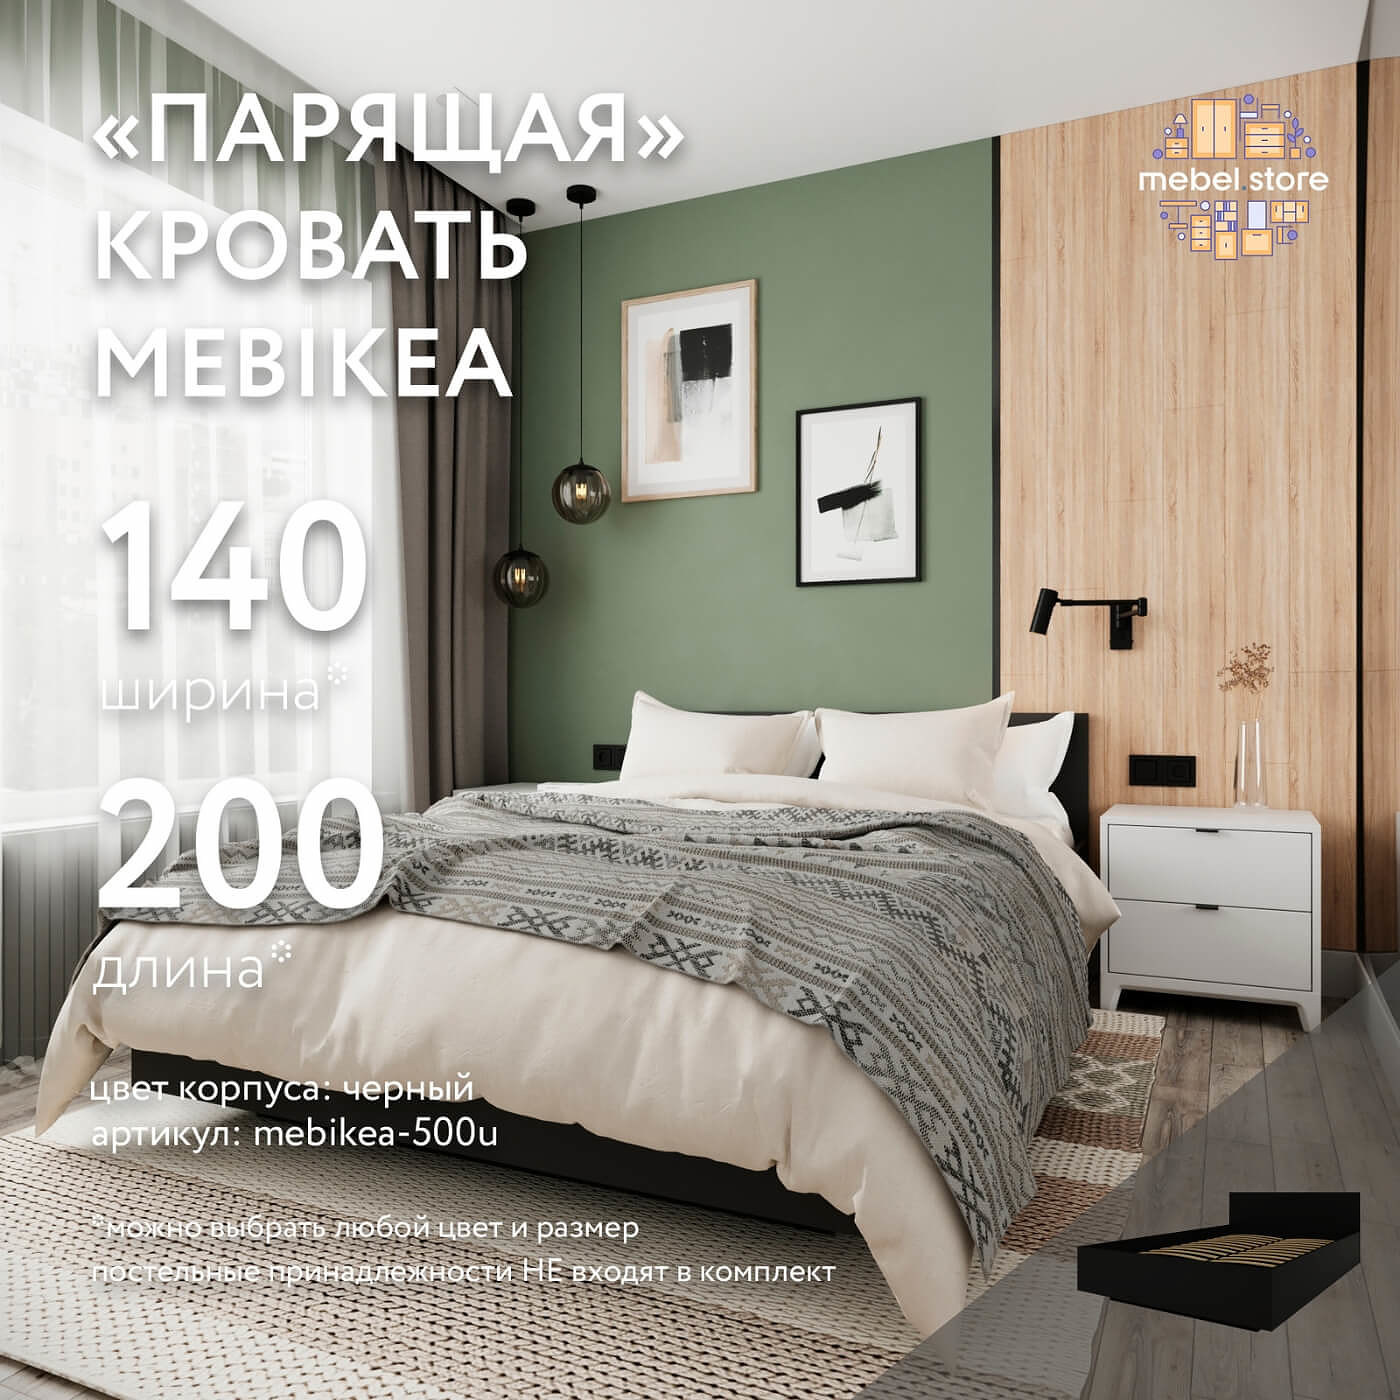 Кровать Mebikea-500u двуспальная минимализм - фото 1 large